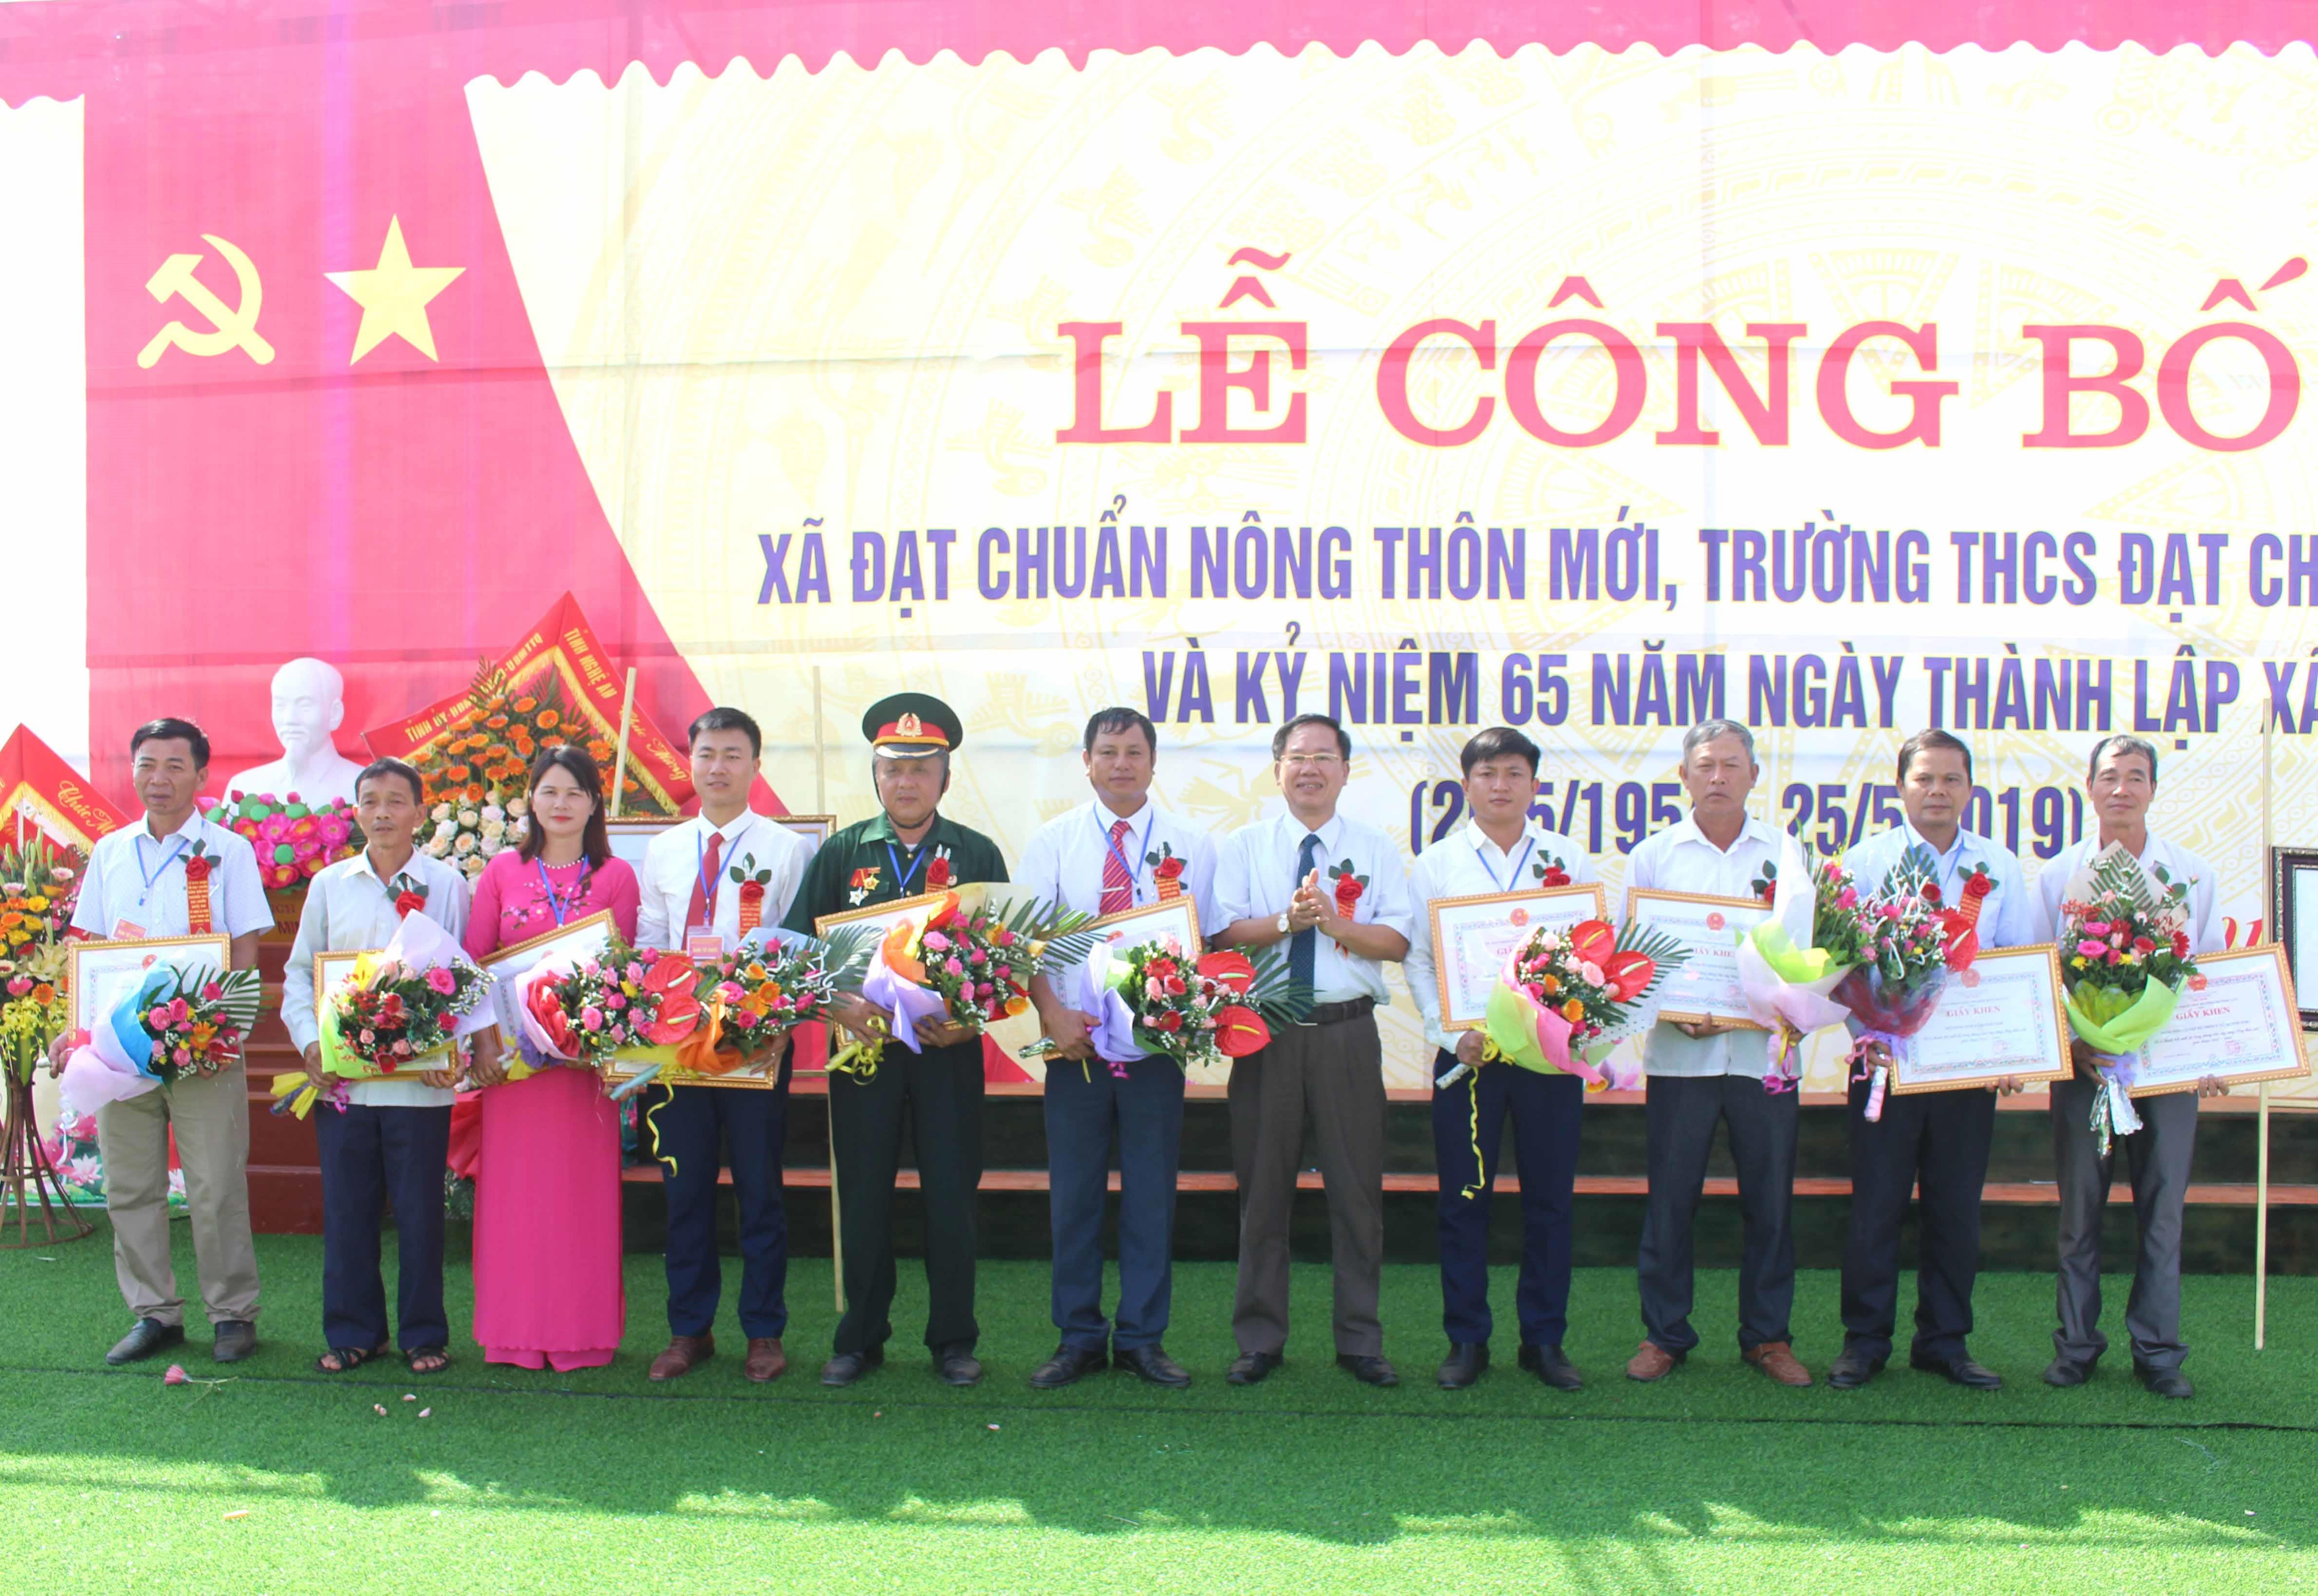 Huyện Quỳnh Lưu trao giấy khen cho các cá nhân, tập thể của xã Quỳnh Tam có thành tích xuất sắc trong phong trào xây dựng NTM giai đoạn 2012 – 2020. Ảnh: Hồng Diện